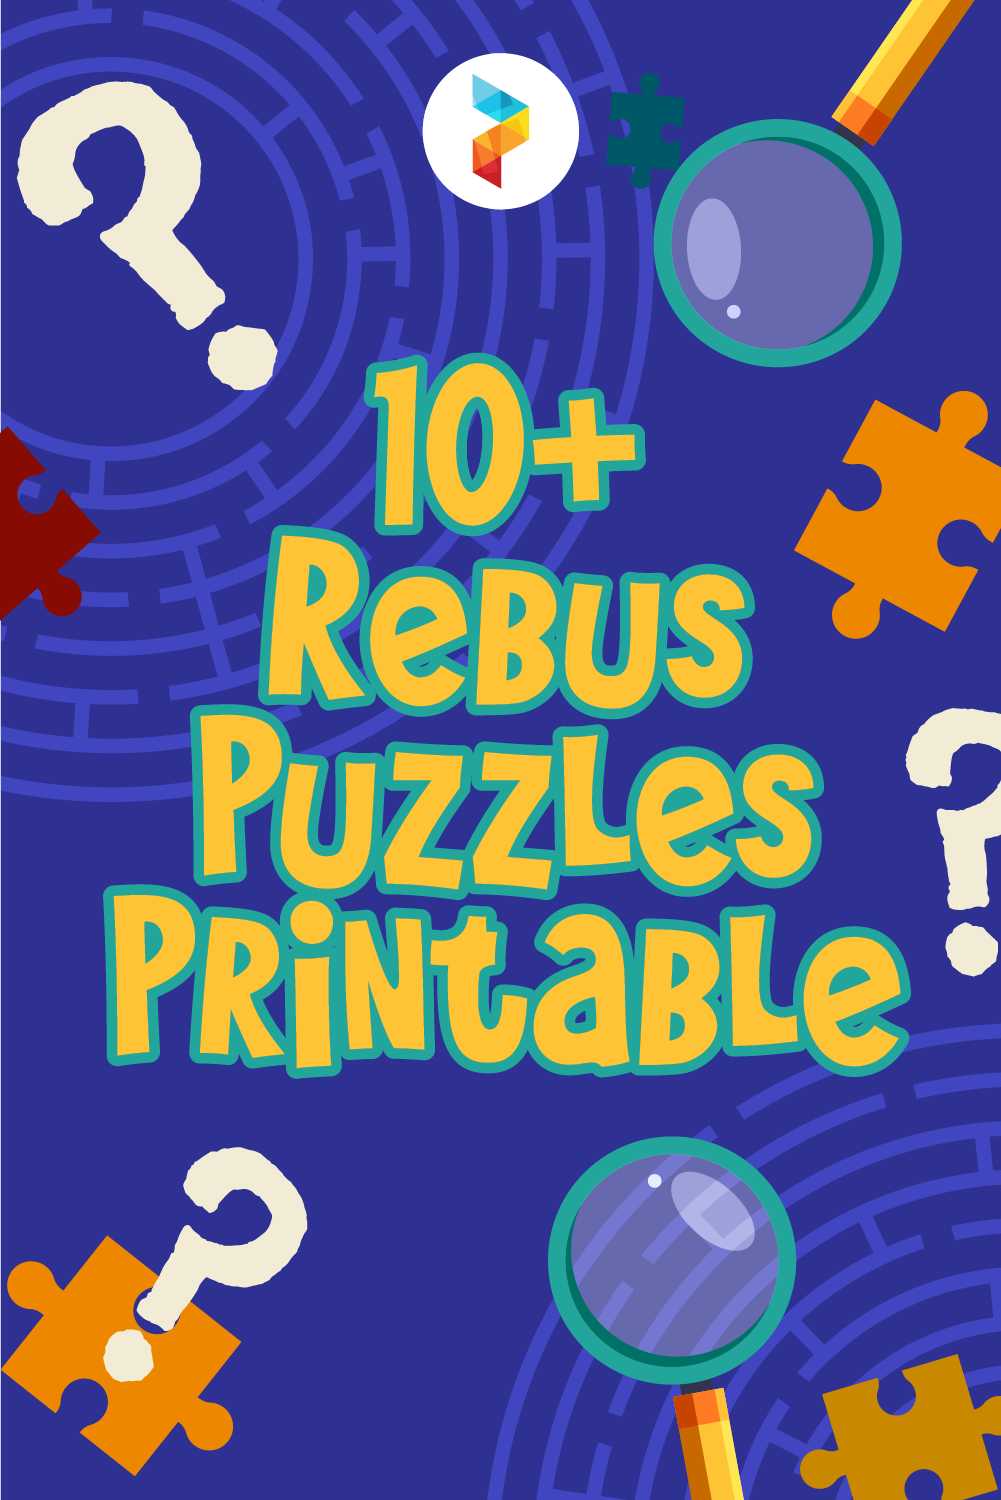 Rebus Puzzles